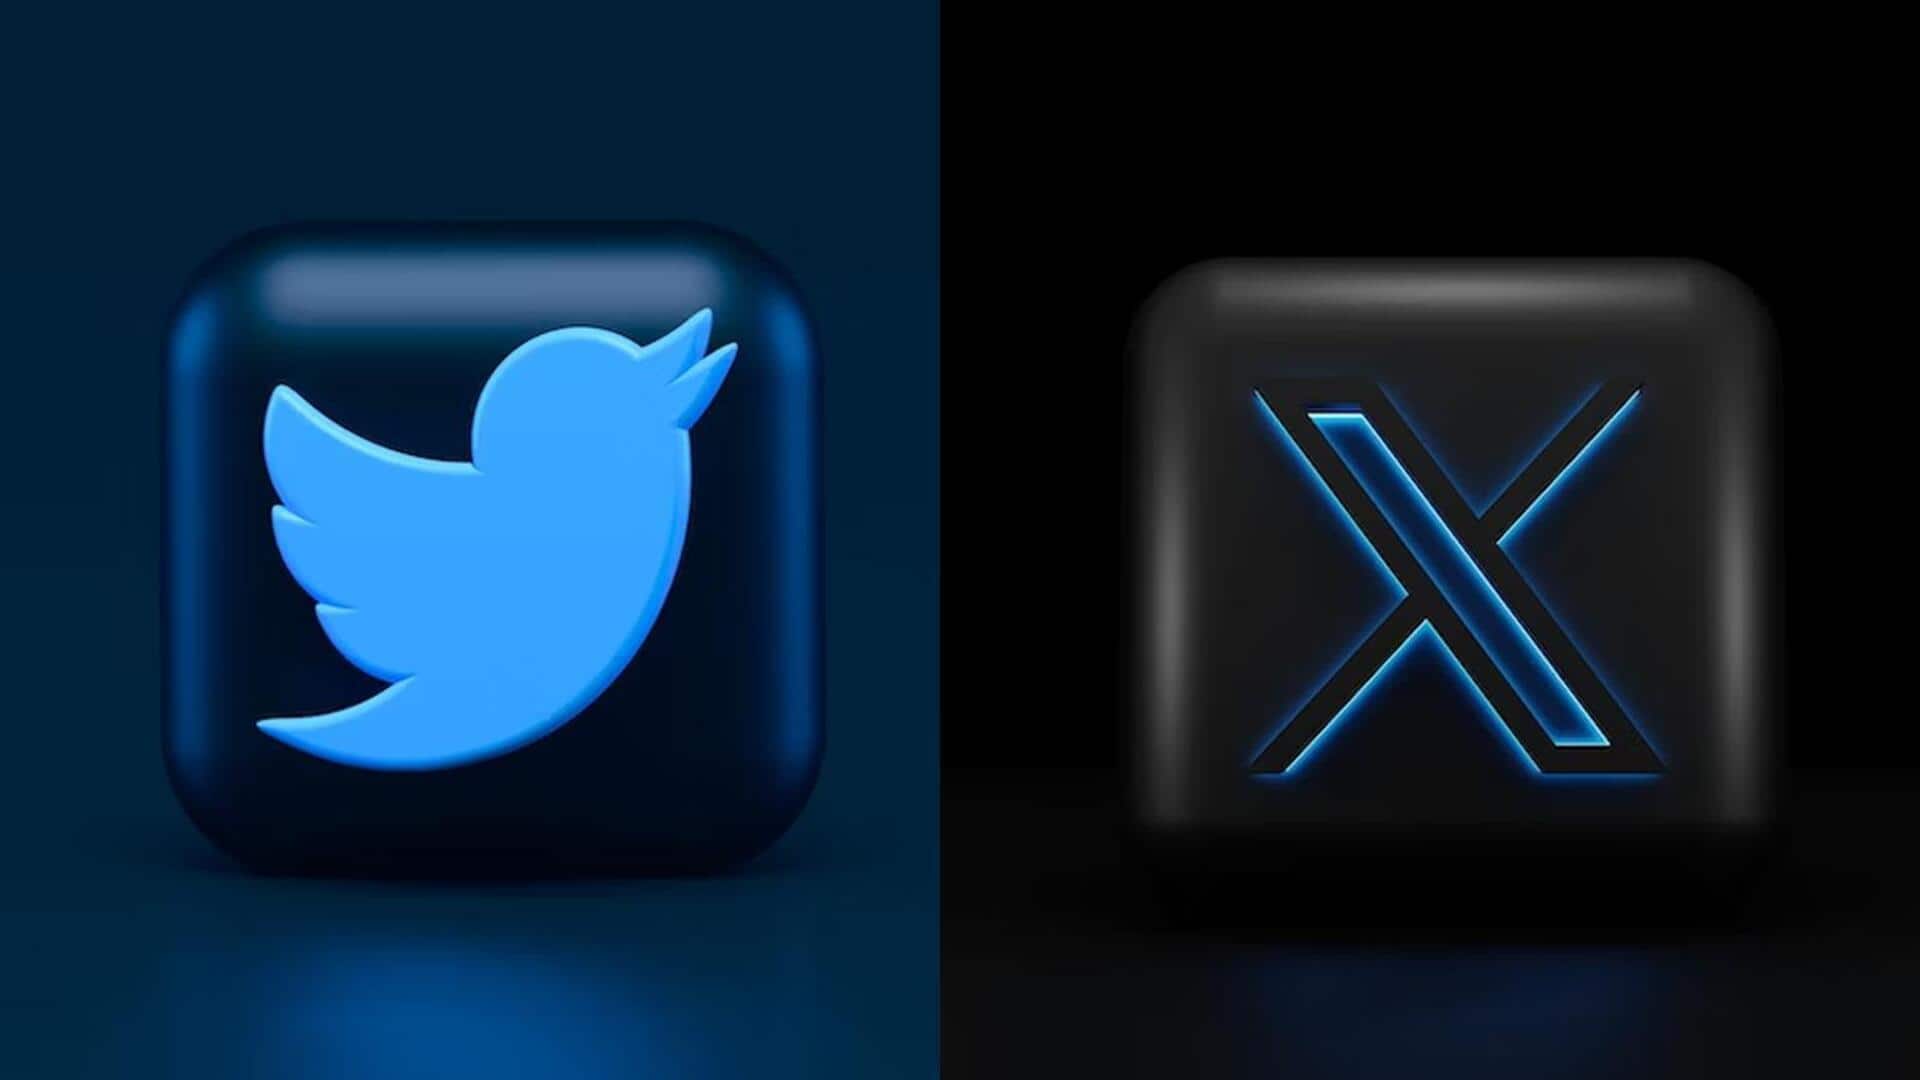 एलन मस्क ने iOS के लिए बदला ट्विटर (X) डोमेन, एंड्रॉयड पर भी होगा बदलाव